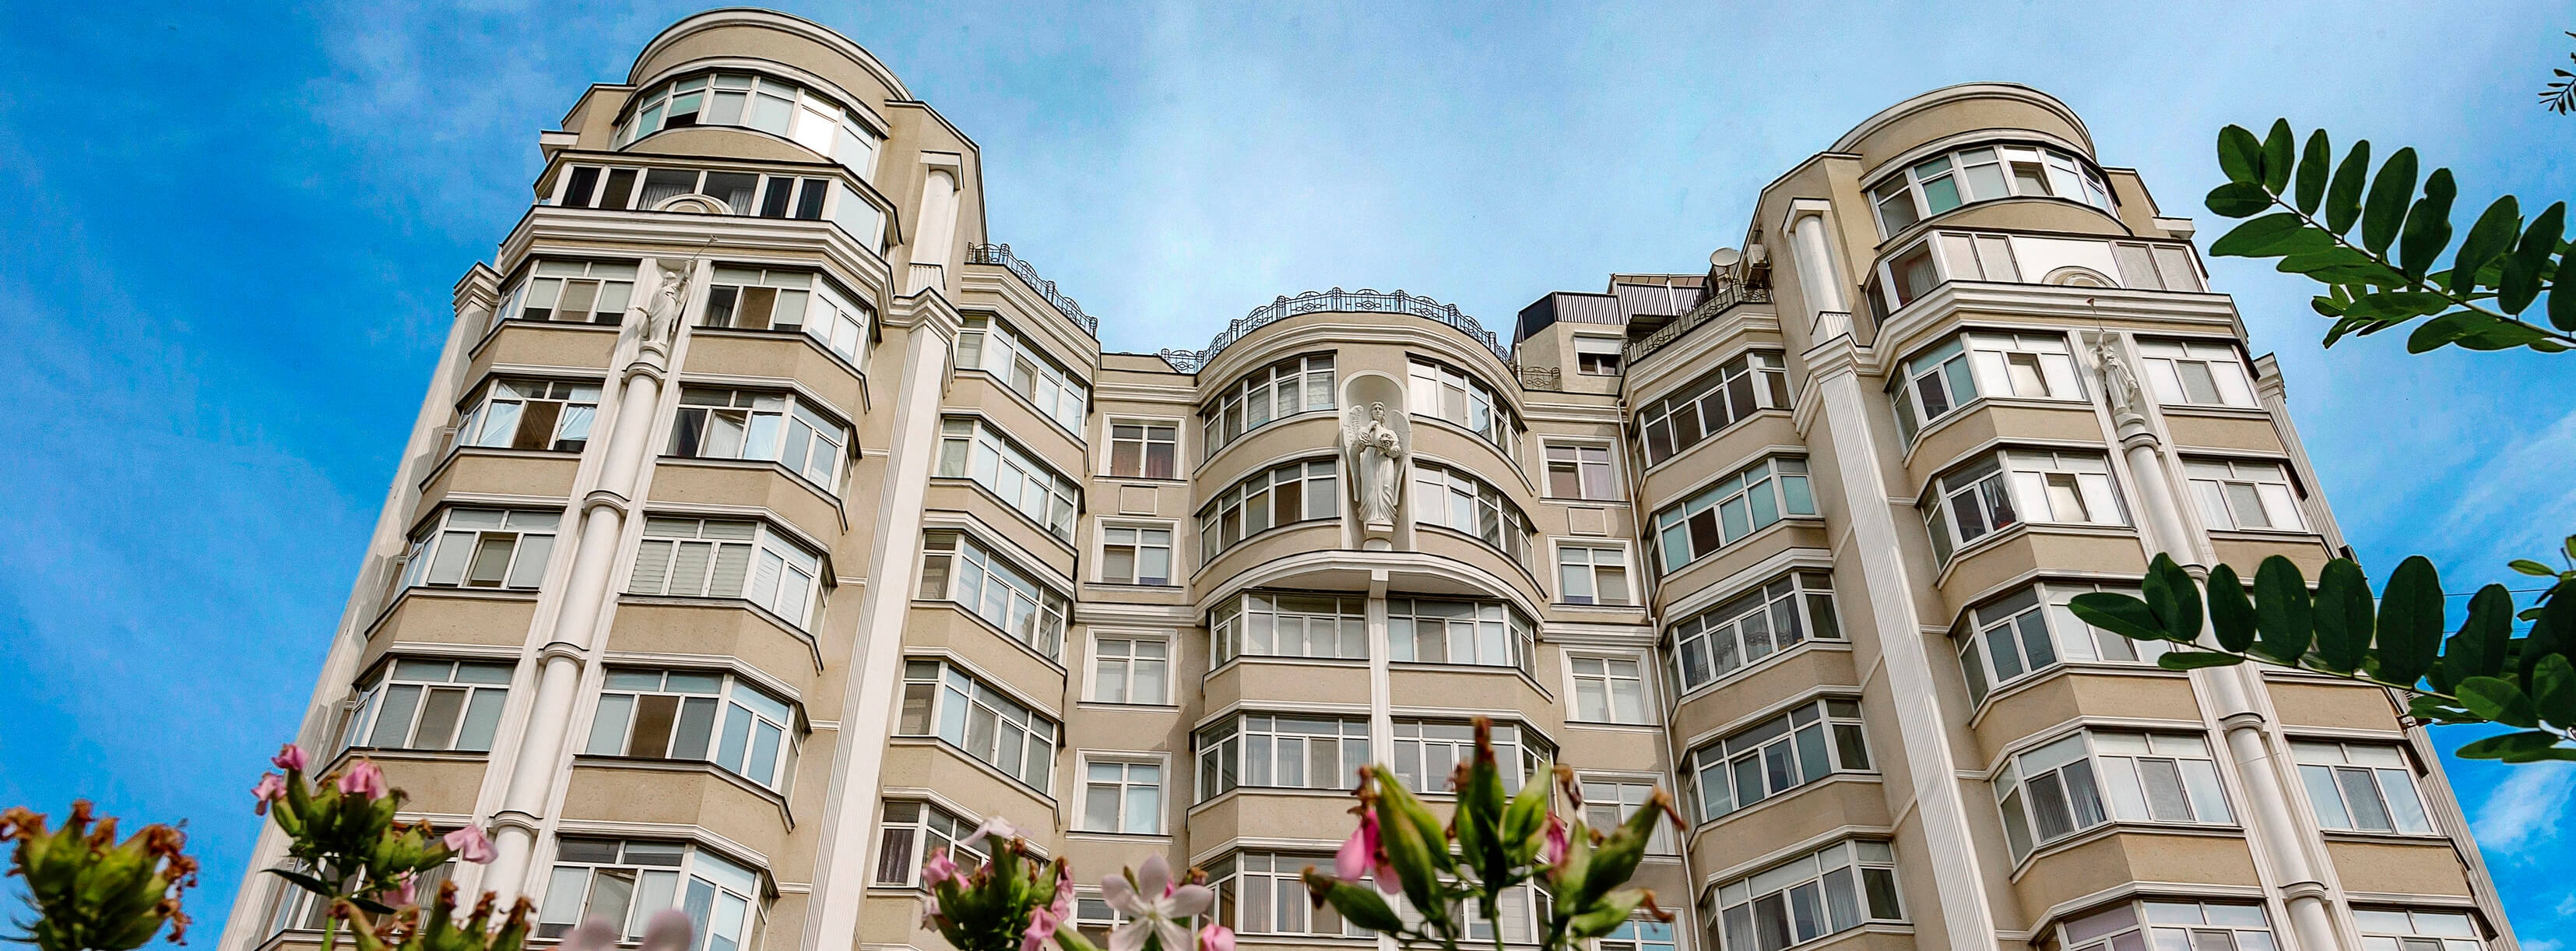 3-х комнатная квартира (140 кв.м) в Домах Каркашадзе на ул.Довженко. ID 51300 (Фото 2)